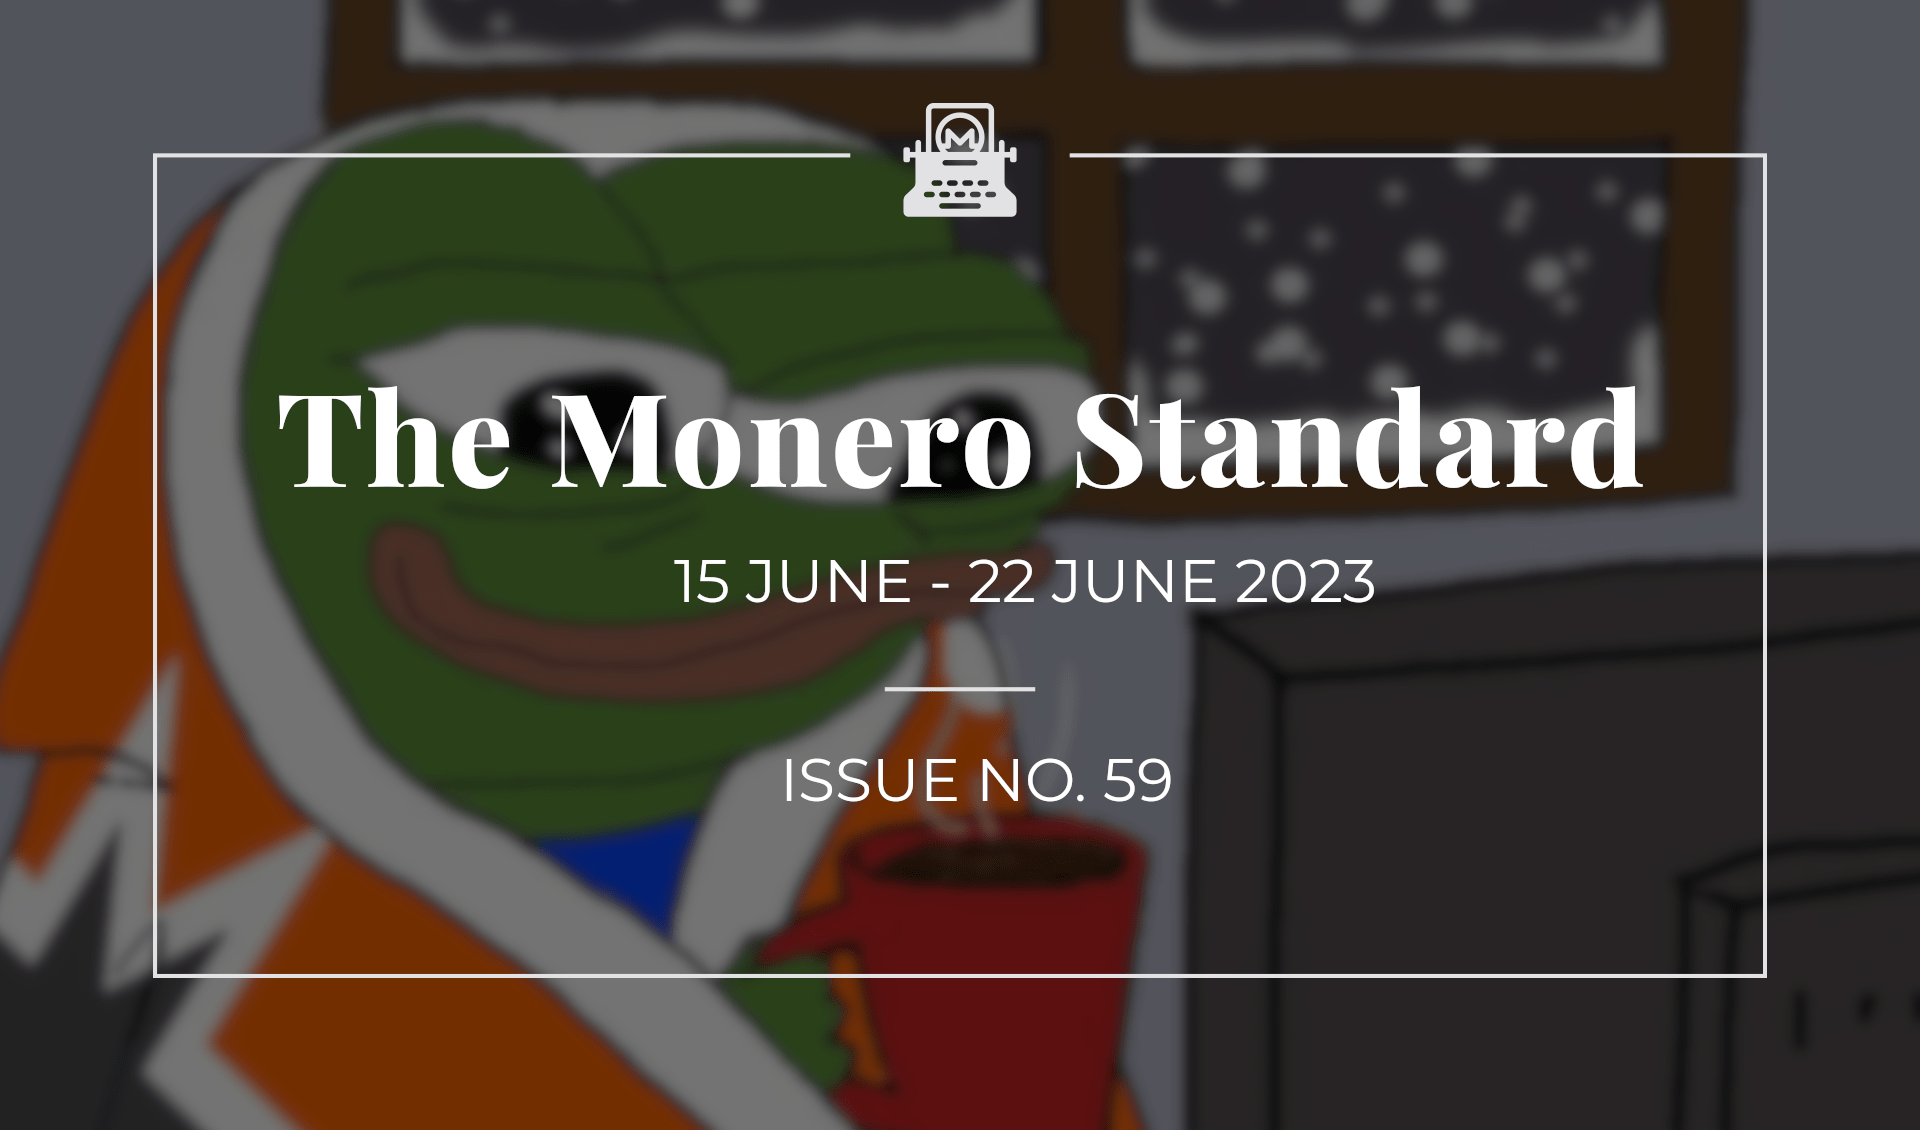 The Monero Standard #59: 15 June 2023 - 22 June 2023